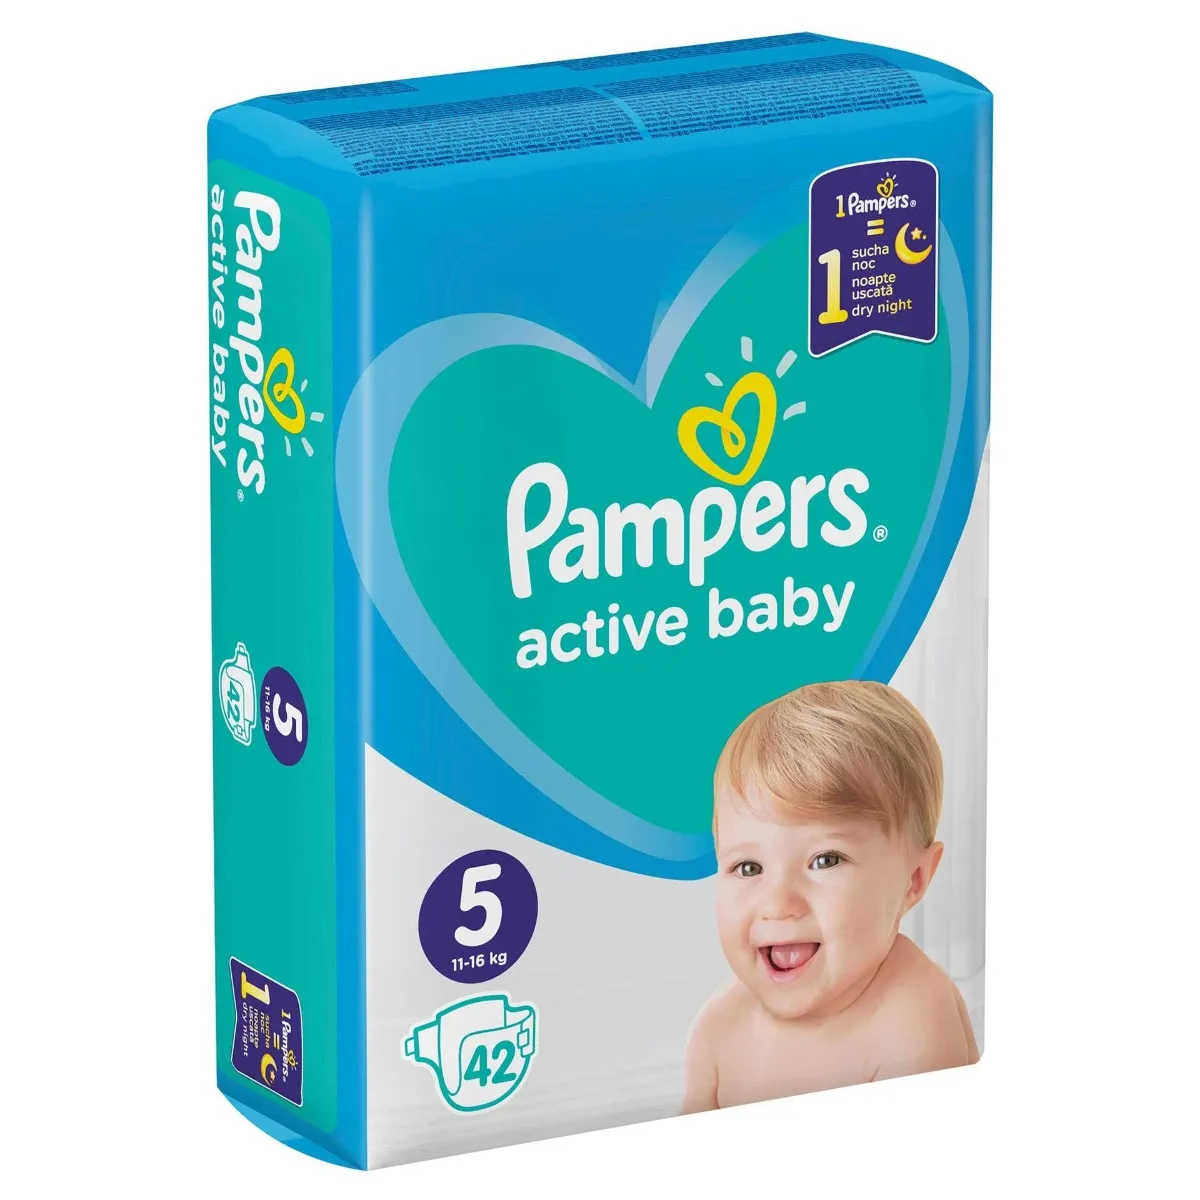 Scutece pentru copii Active Baby marimea 5 pentru 11-16 kg, 42 bucati, Pampers